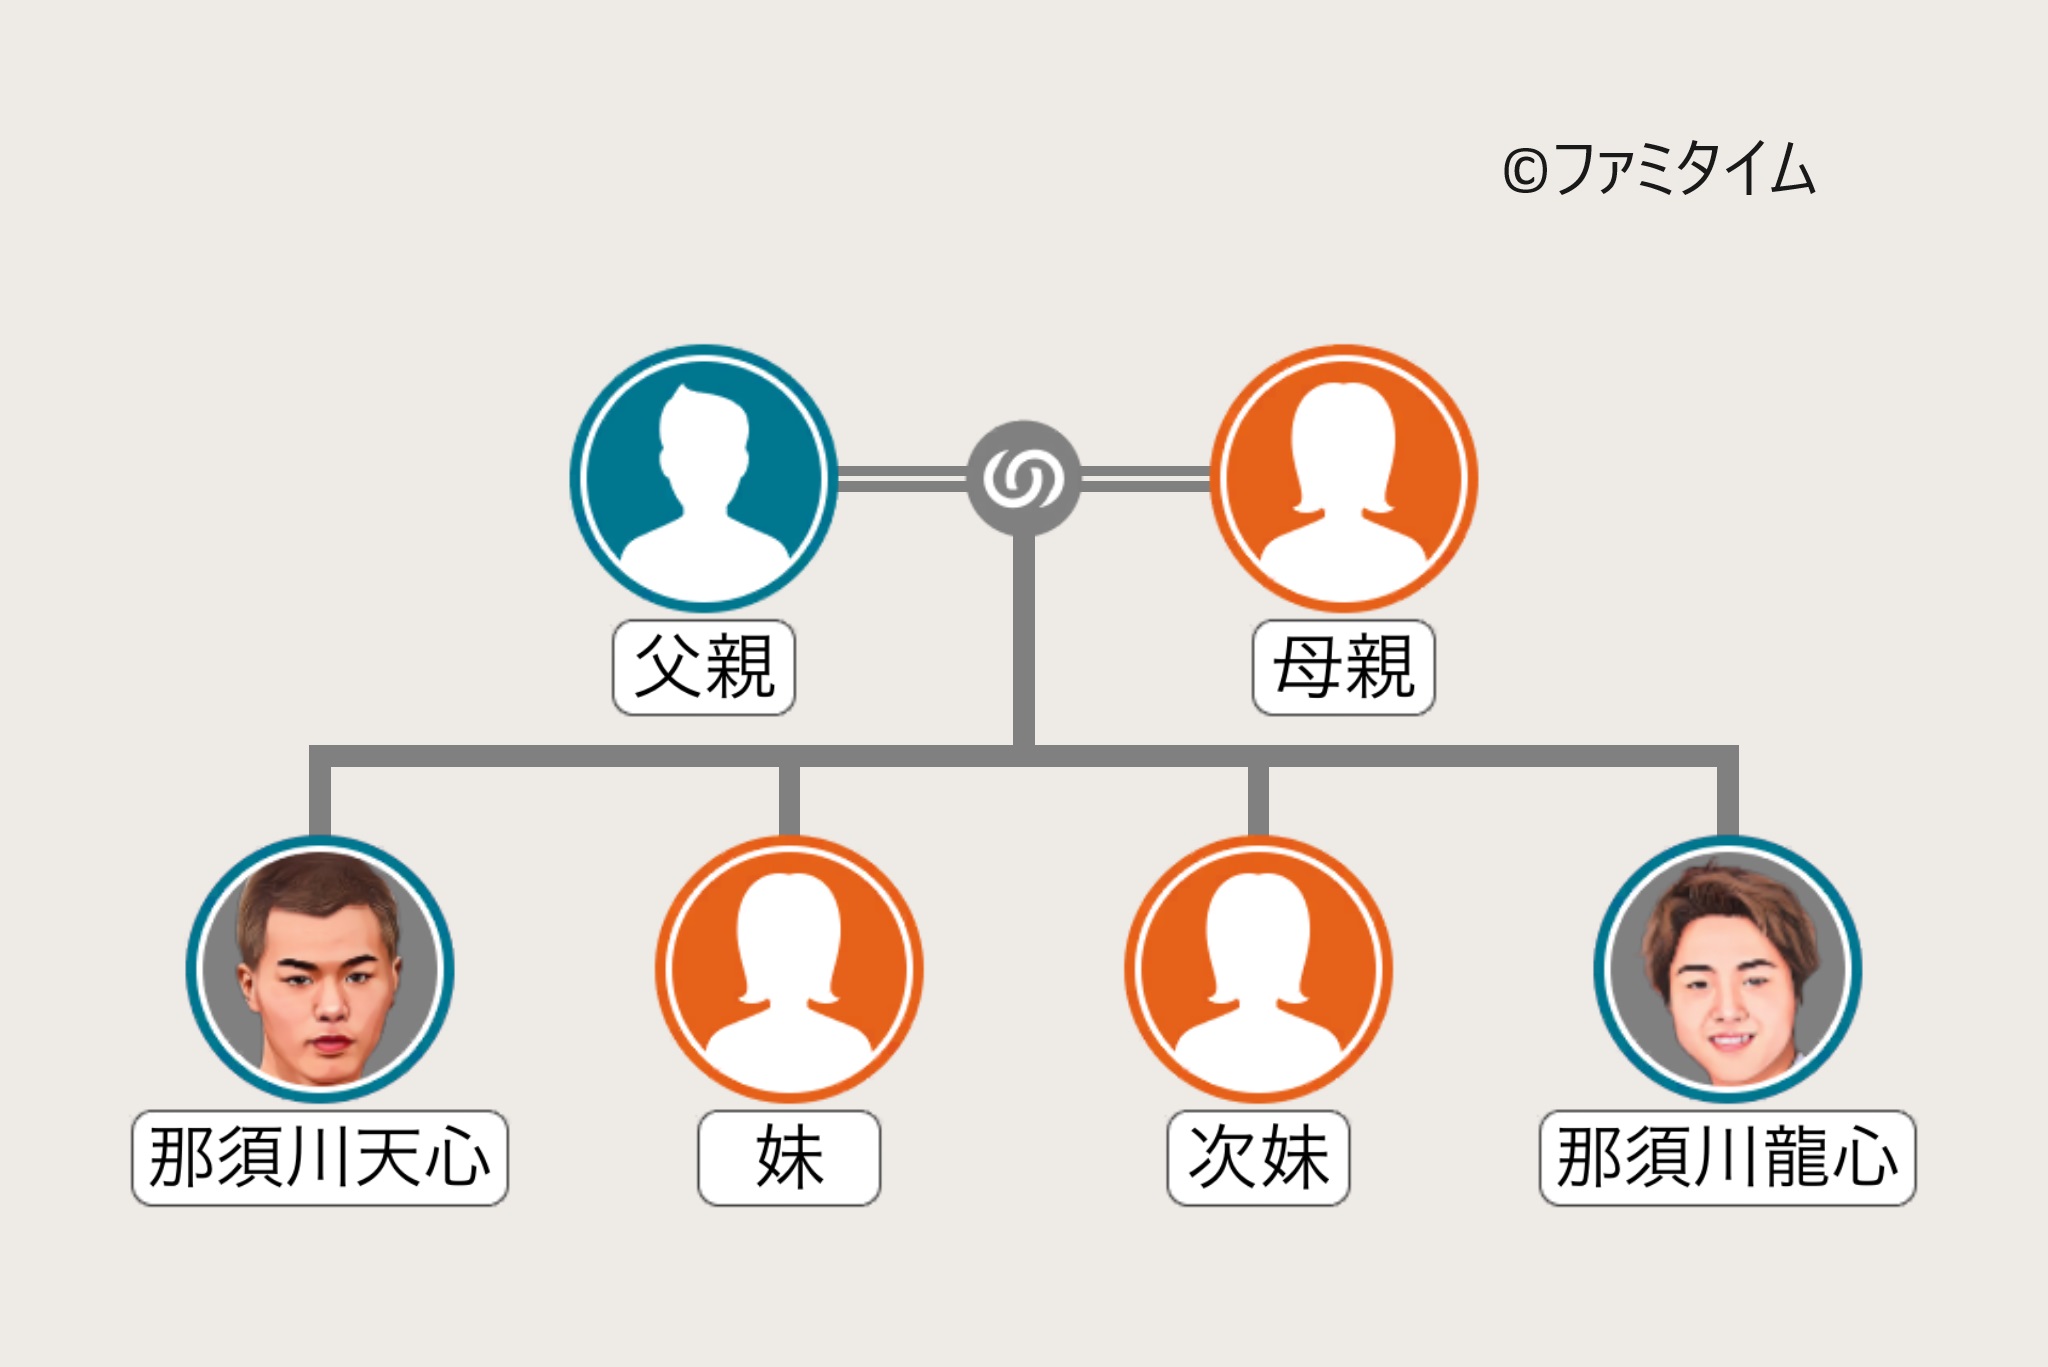 那須川天心の家系図